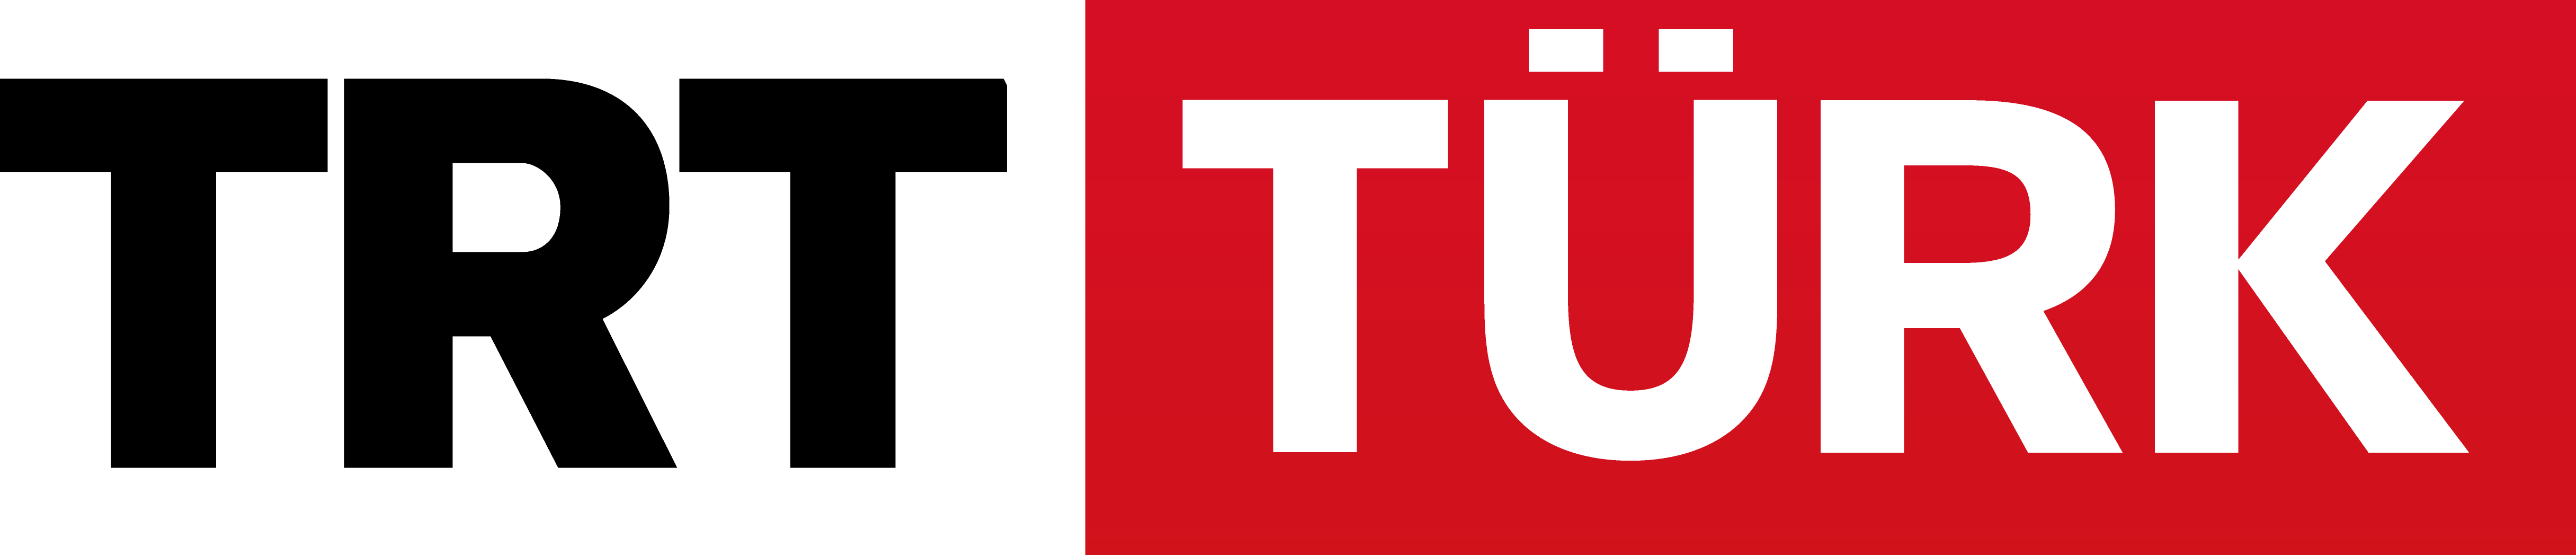 TRT TV Channels Logos [trt.net.tr] png